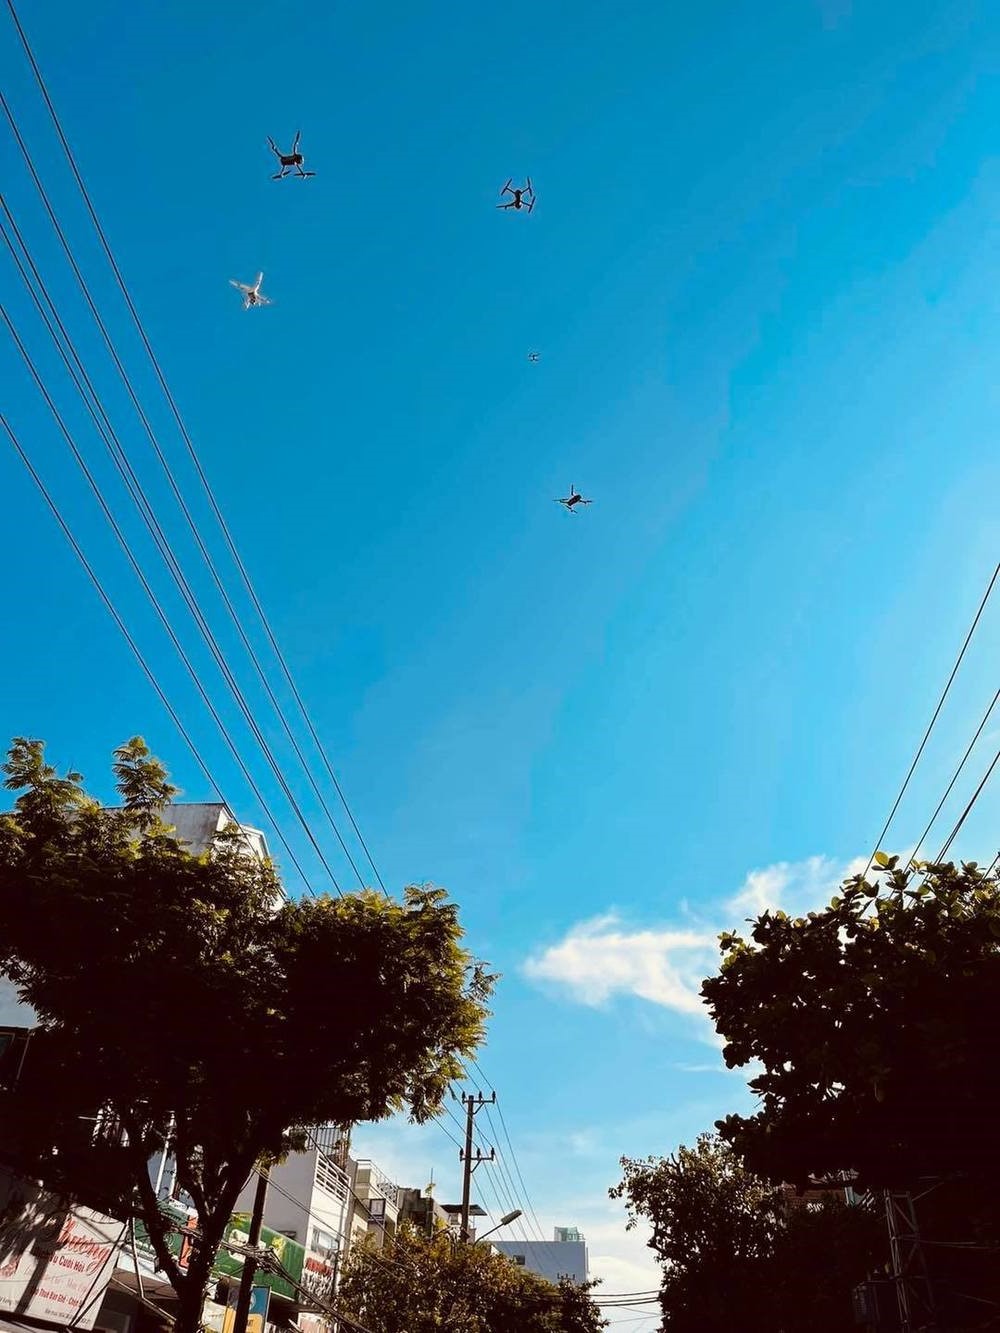 flycam bay trên bầu trời Đà Nẵng để giám sát dân chúng